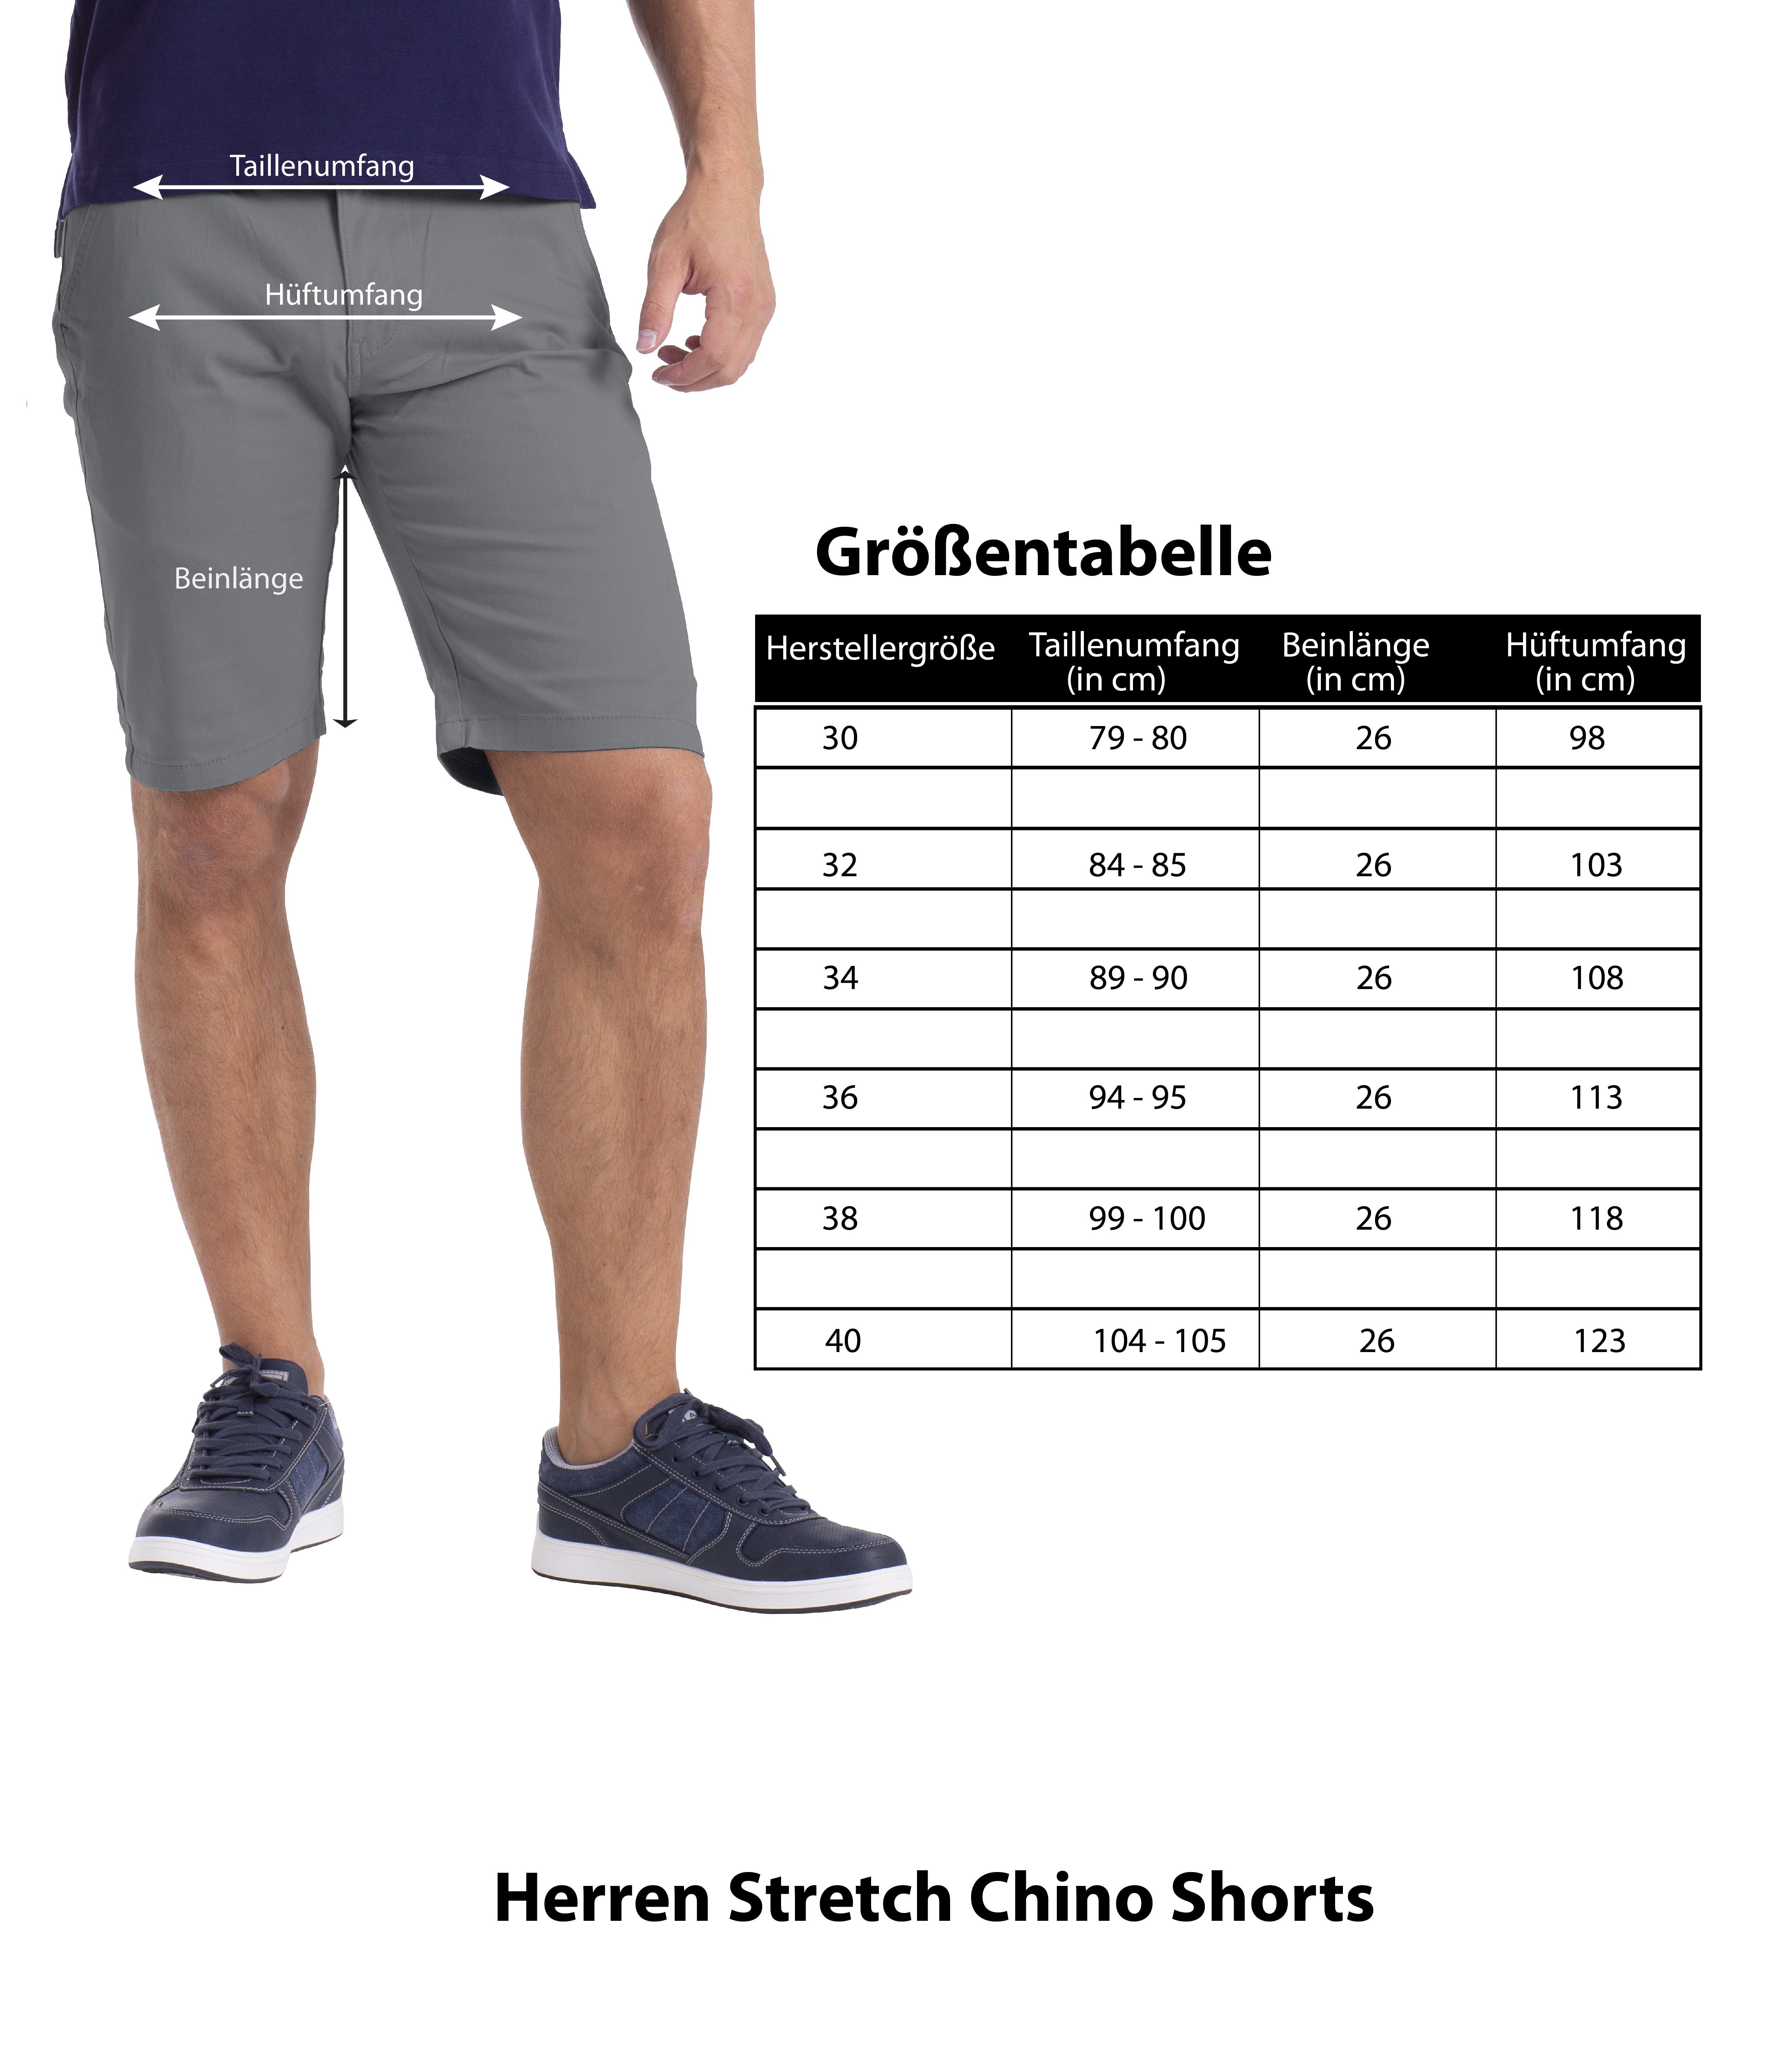 Bermuda Hellgrau Stretch Chino Chinoshorts BlauerHafen Herren Strecken-Baumwolle Shorts Fit Slim Hose